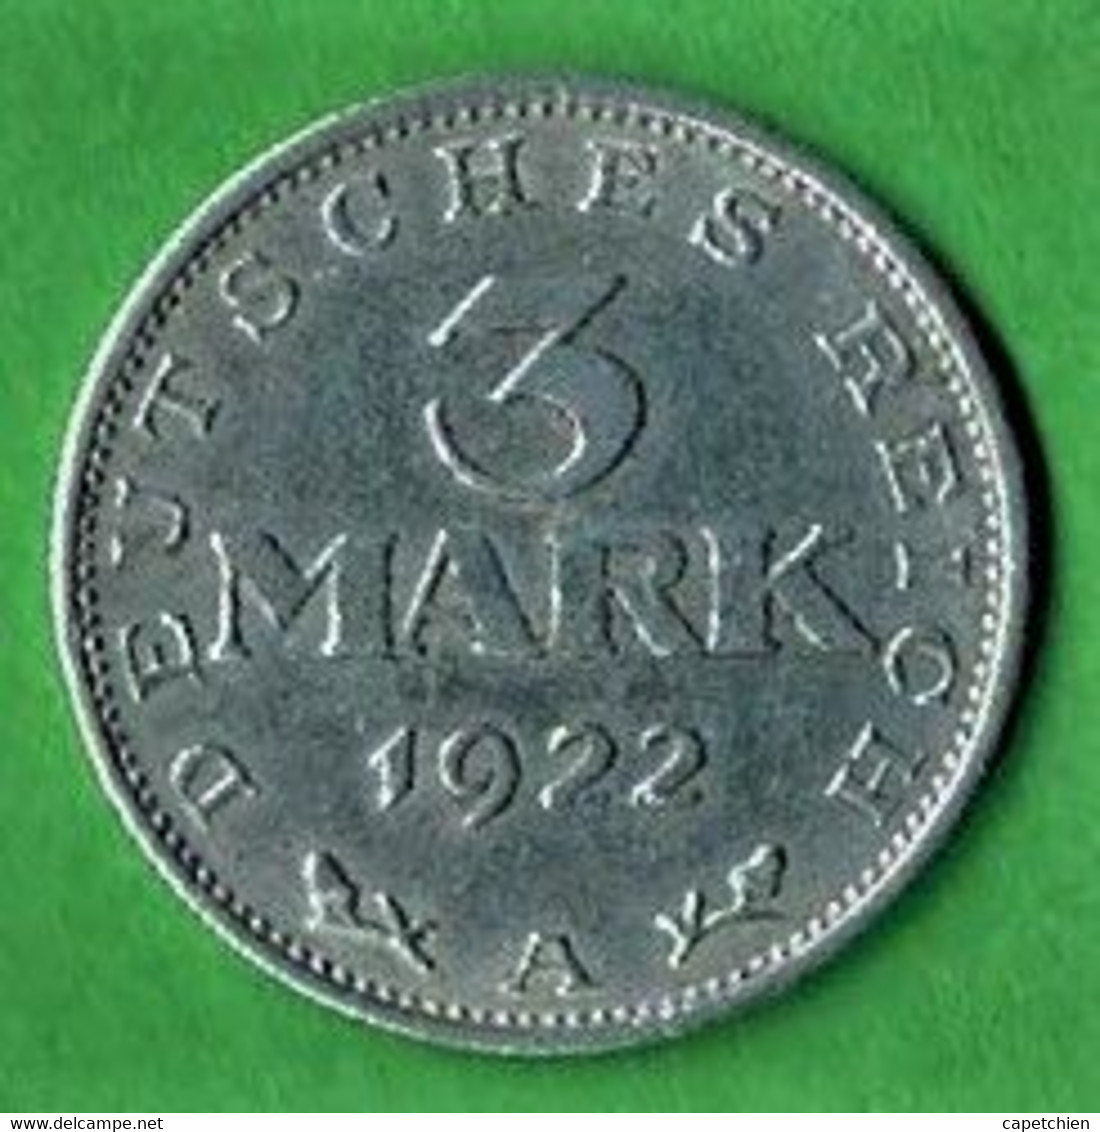 ALLEMAGNE / REPUBLIQUE DE WEIMAR / 3 MARK / 1922 A / ALU / ETAT SUP - 3 Marcos & 3 Reichsmark